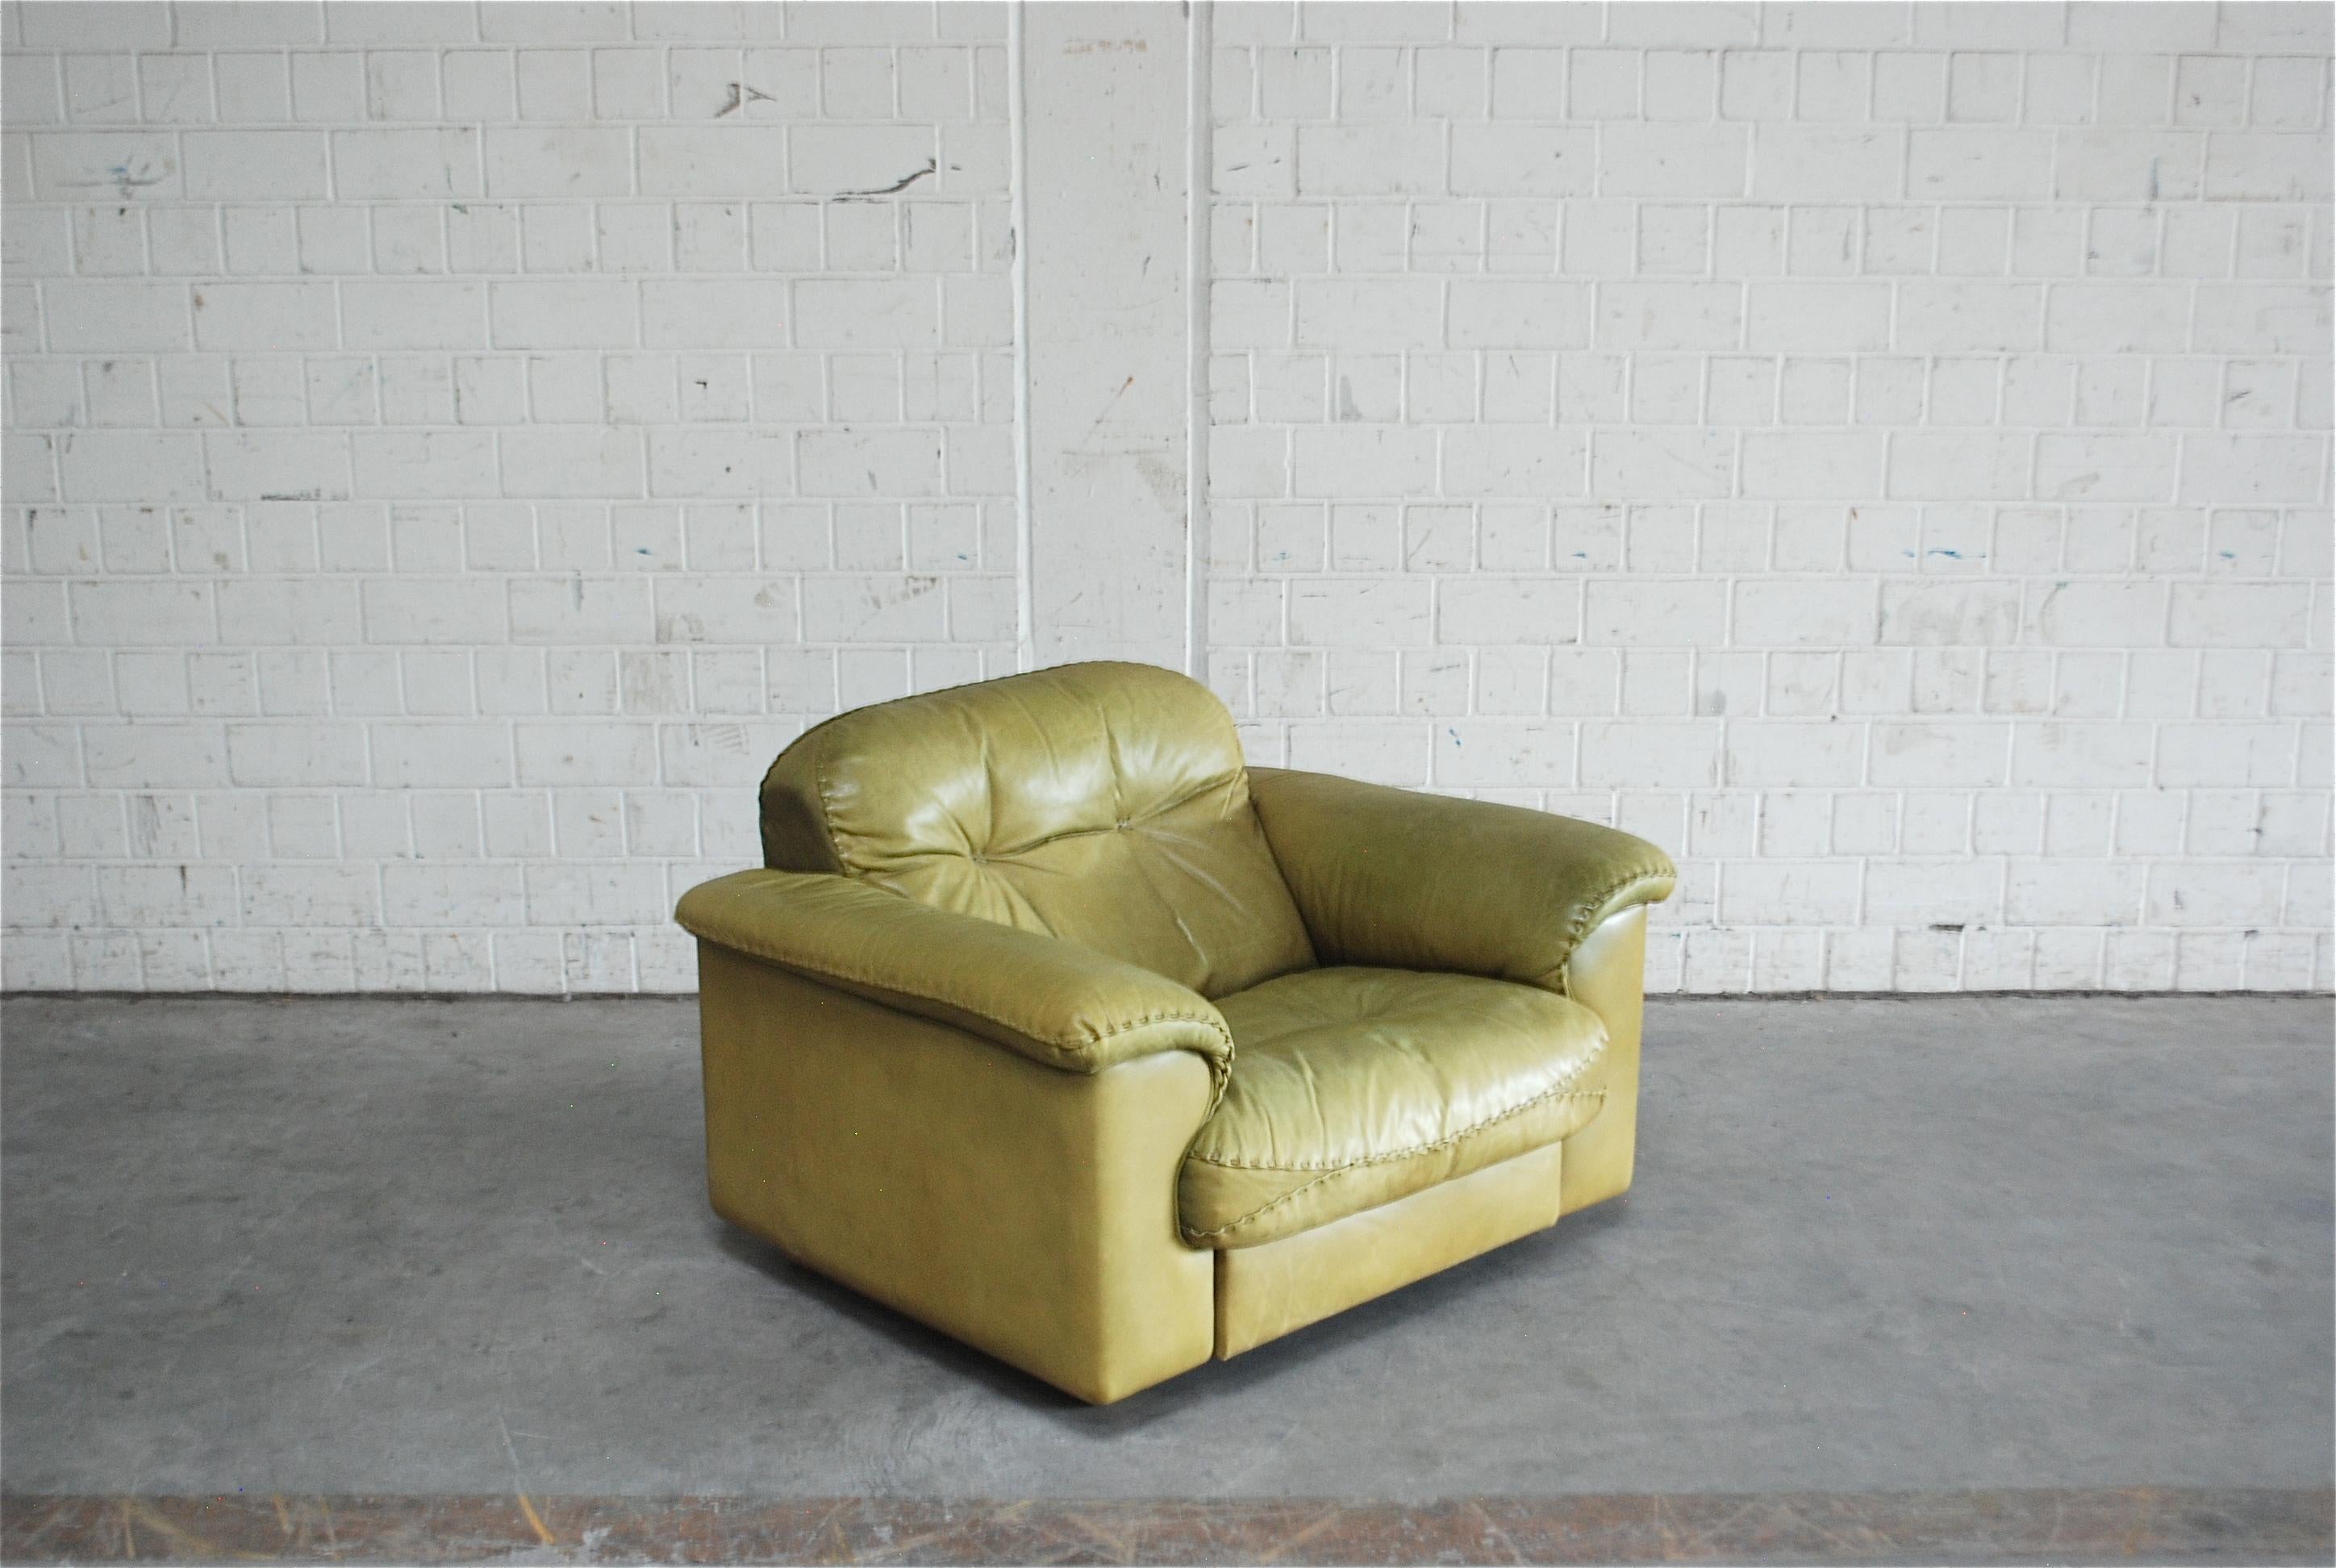 De Sede Lounge-Sessel aus Leder DS 101.
Anilinleder in Olivgrün.
Großer Komfort mit einer ausziehbaren Sitzfläche für noch mehr Lounge-Komfort.
Bekannt aus dem James-Bond-Film 